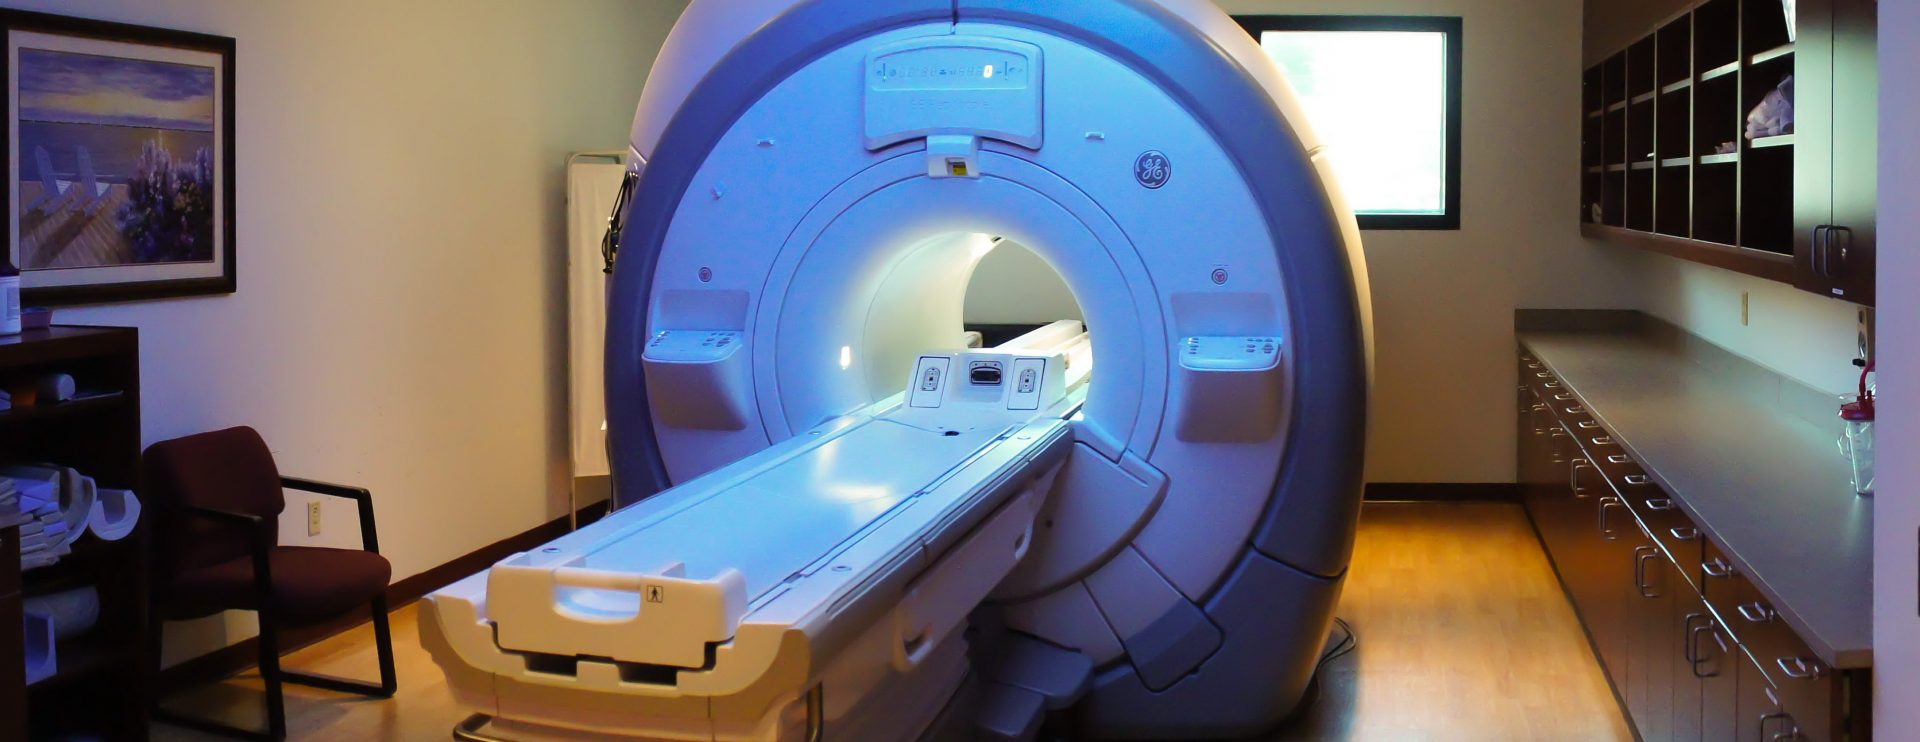 MRI Chest Case Study